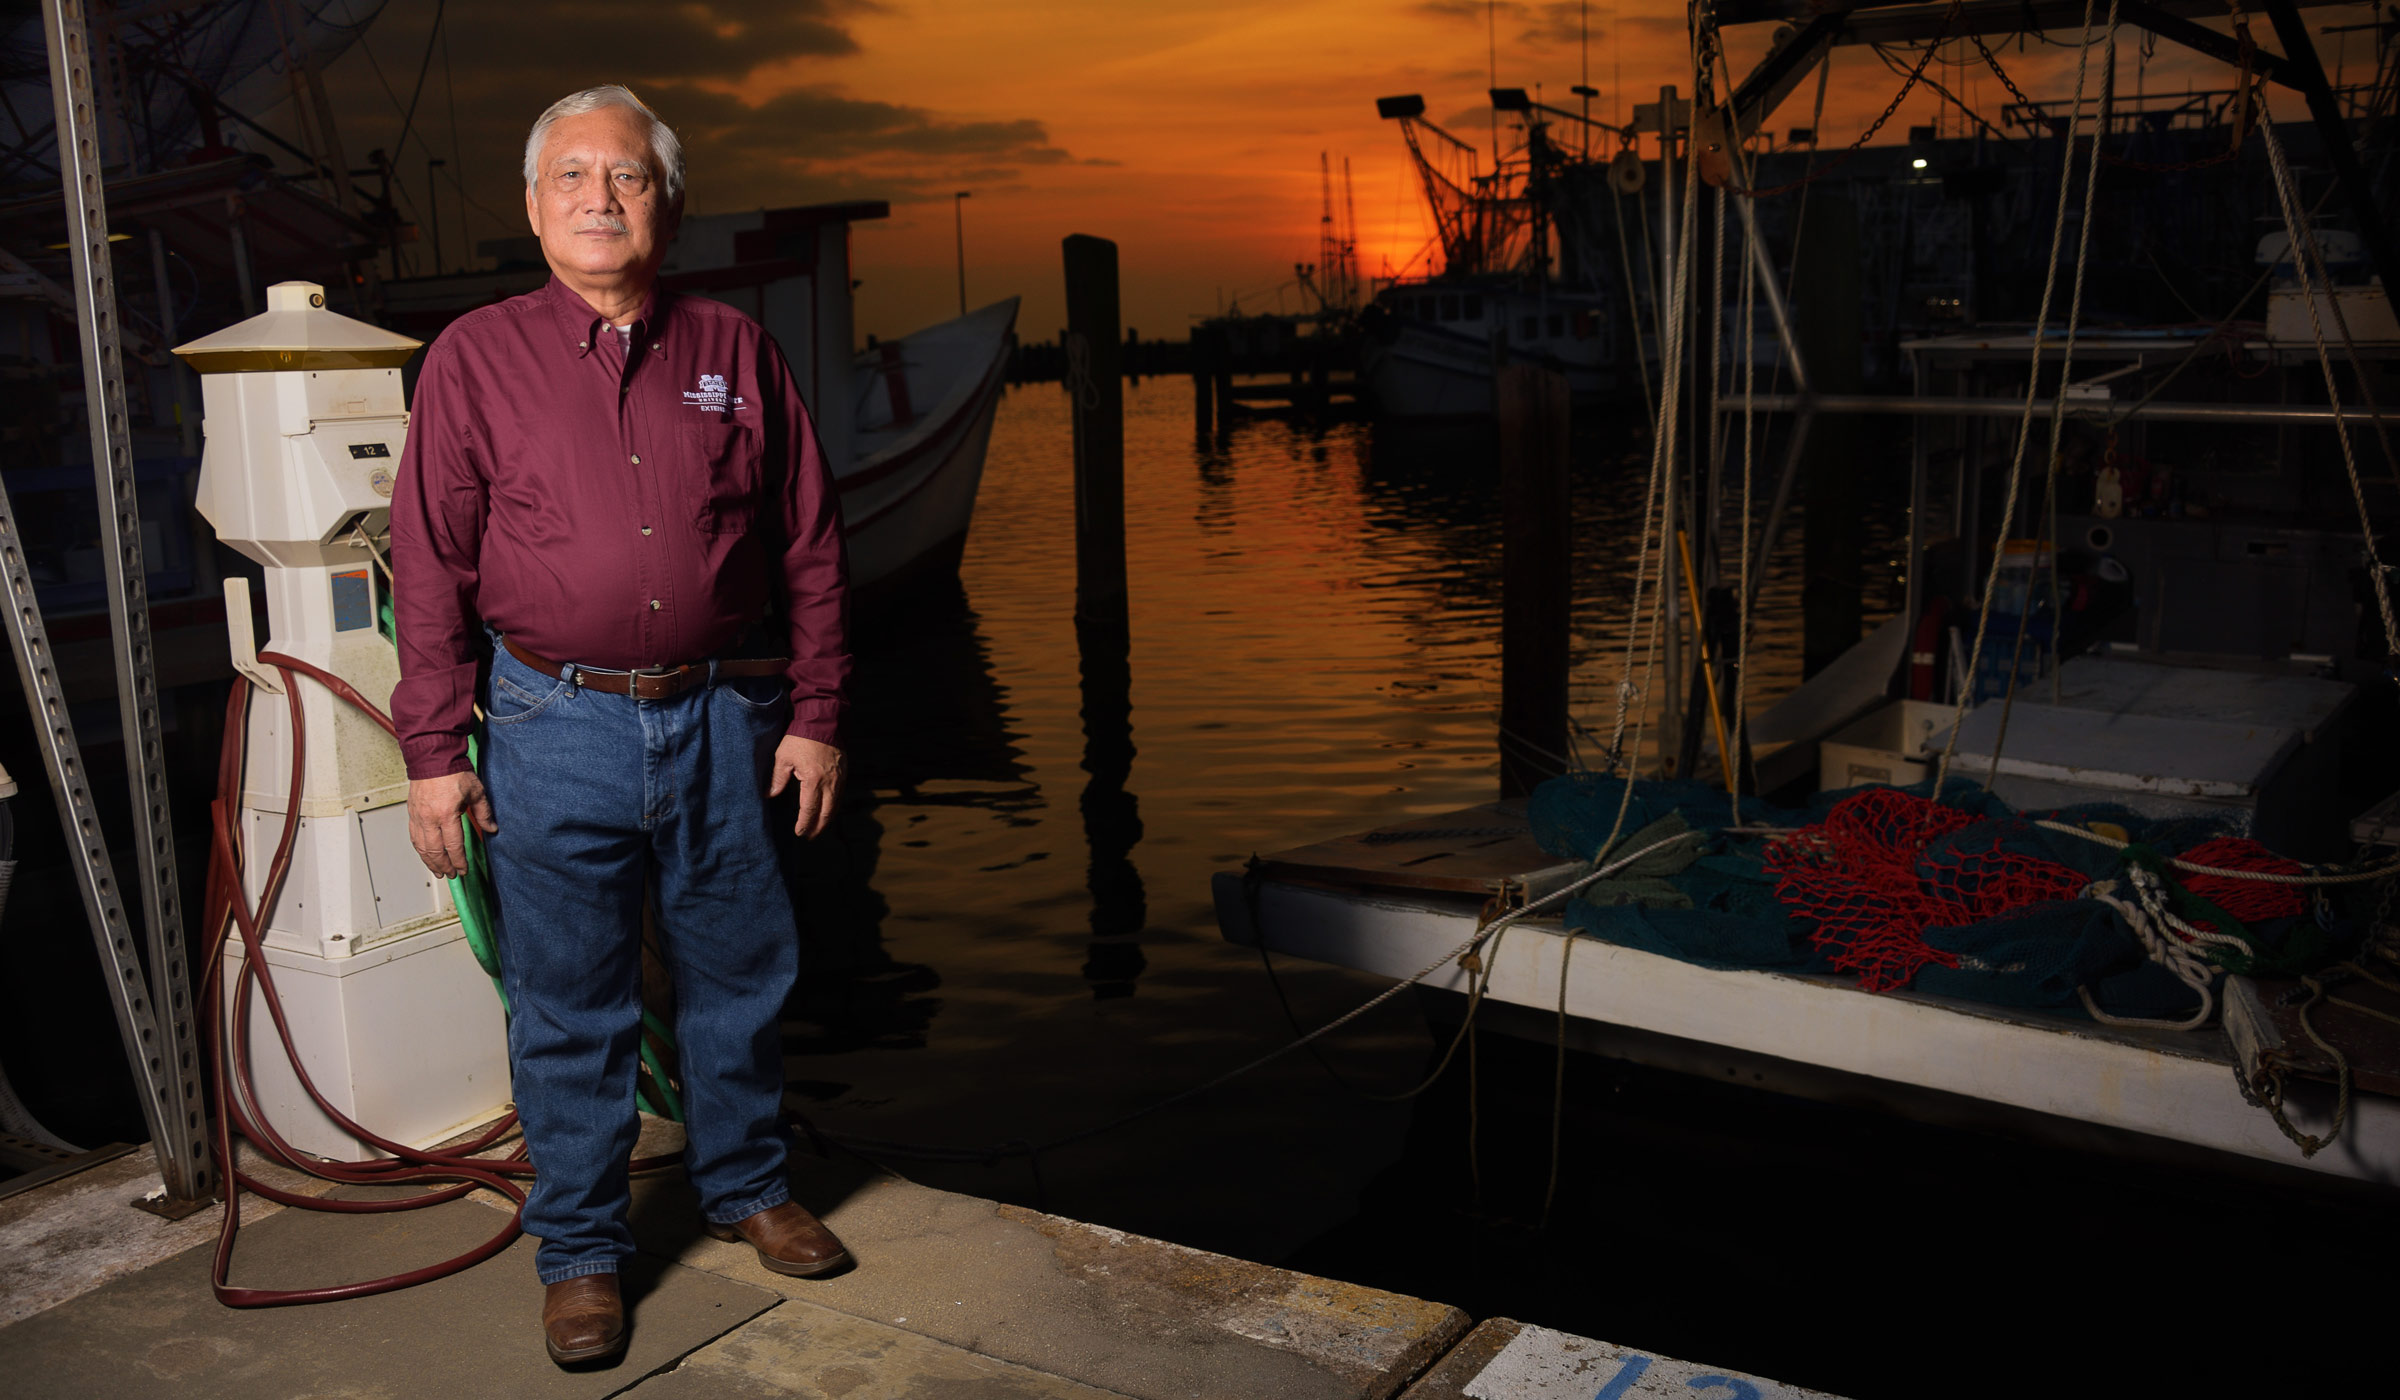 Ben Posadas, pictured on a Gulf Coast pier at sunset.